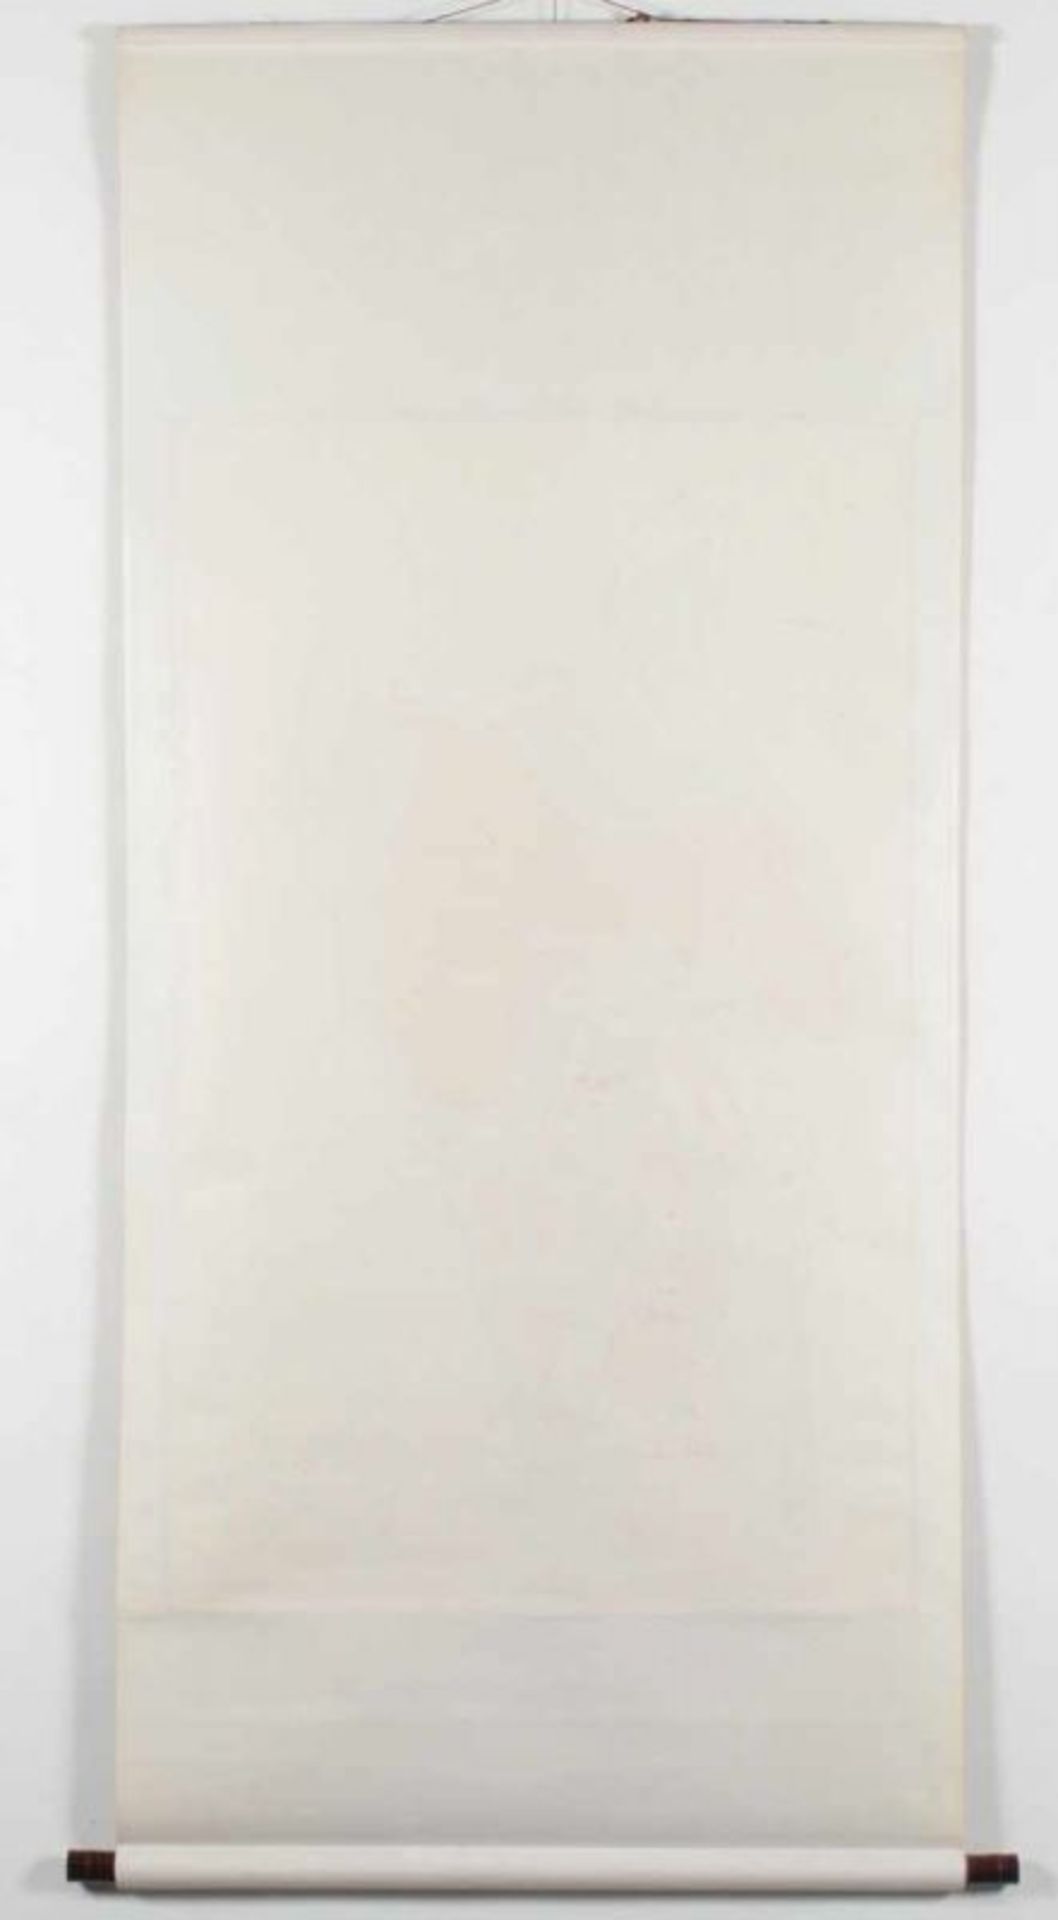 ROLLBILD, Tusche und Farben auf Papier, Aufschrift und Siegel, 100 x 64, montiert, CHINA, 20.Jh. - Bild 3 aus 3